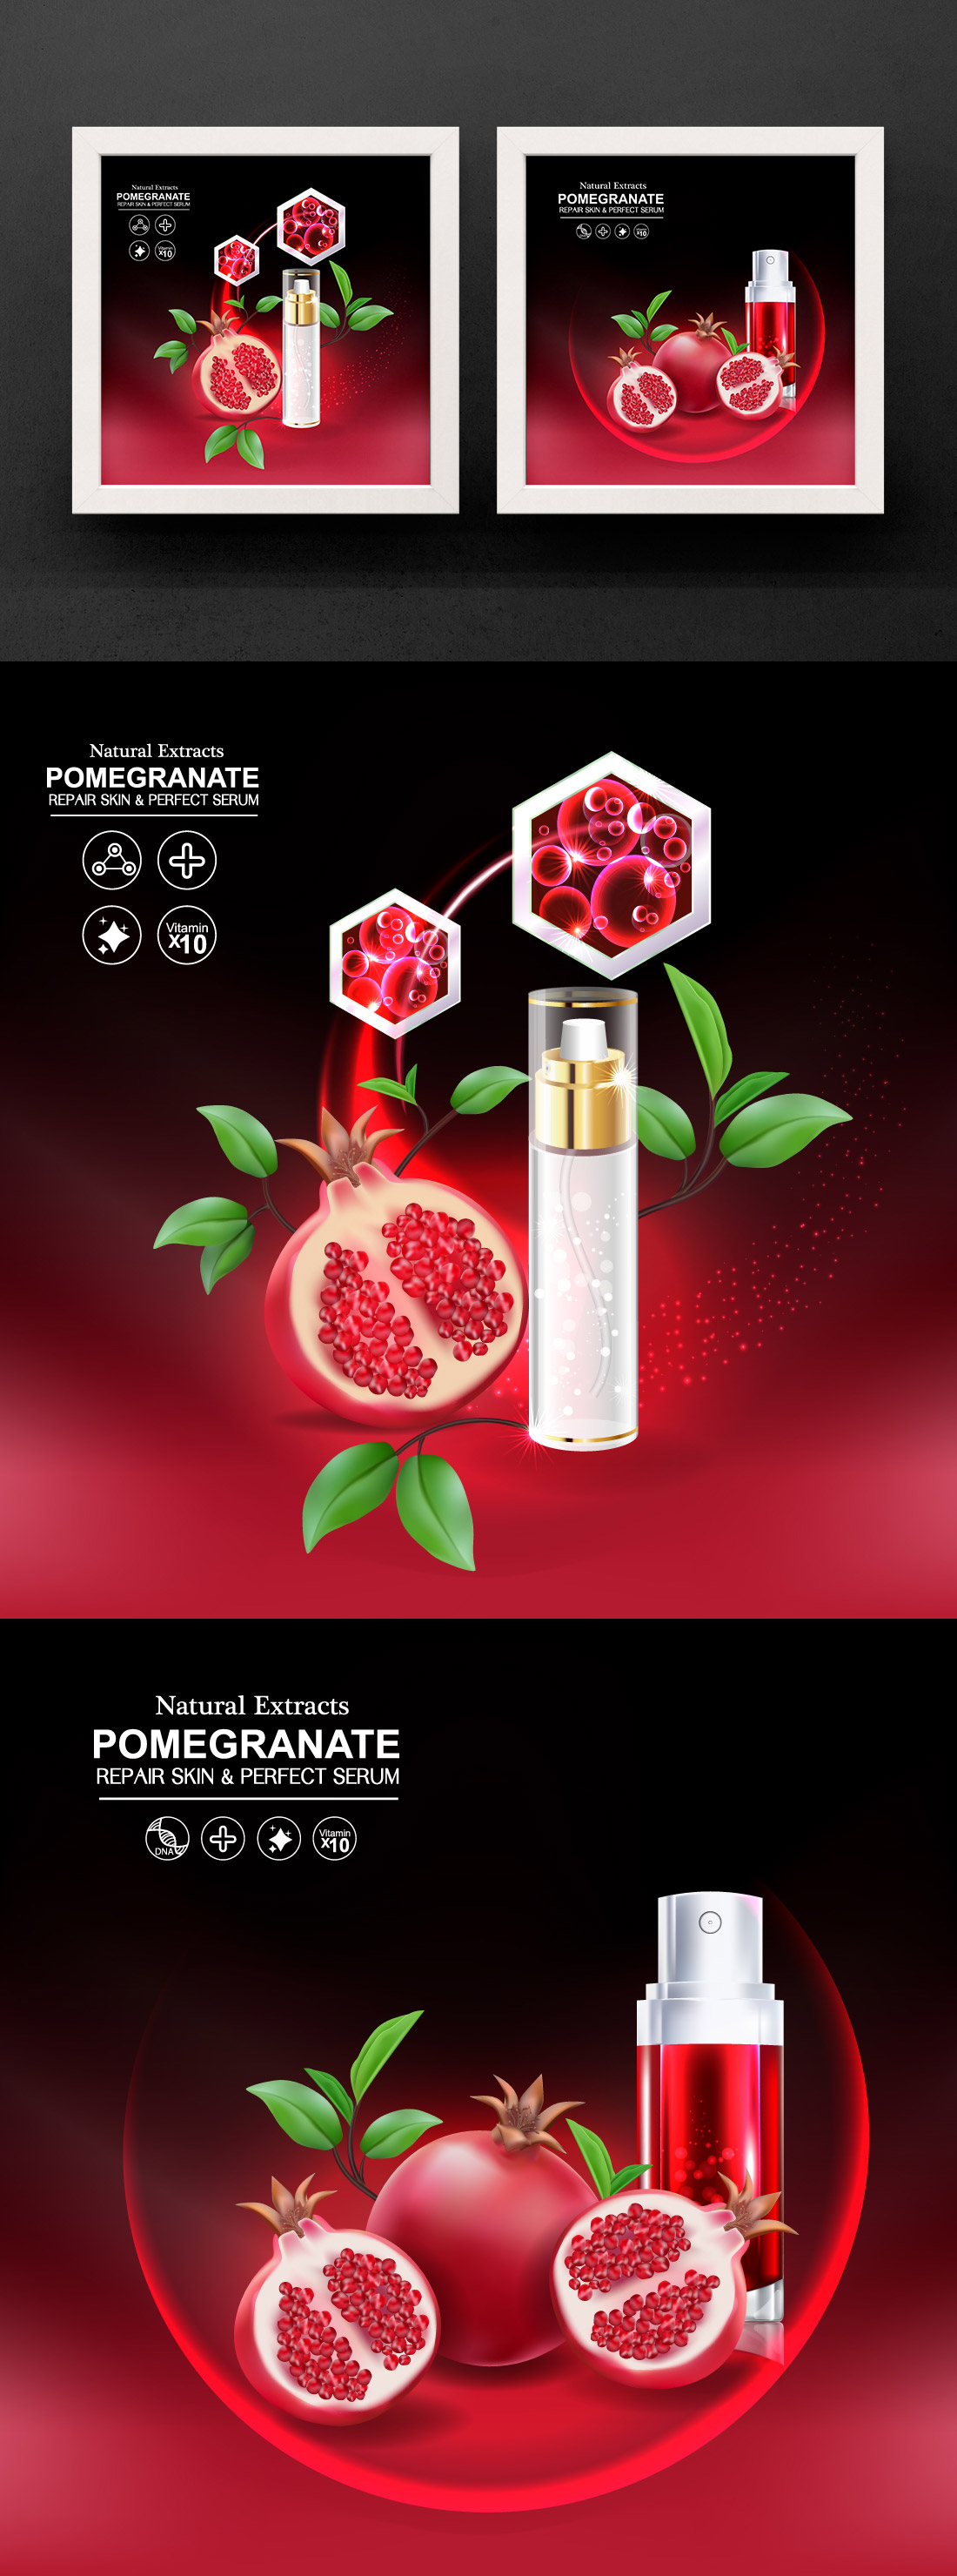 红石榴护肤精华广告宣传矢量海报素材 Pomegranate